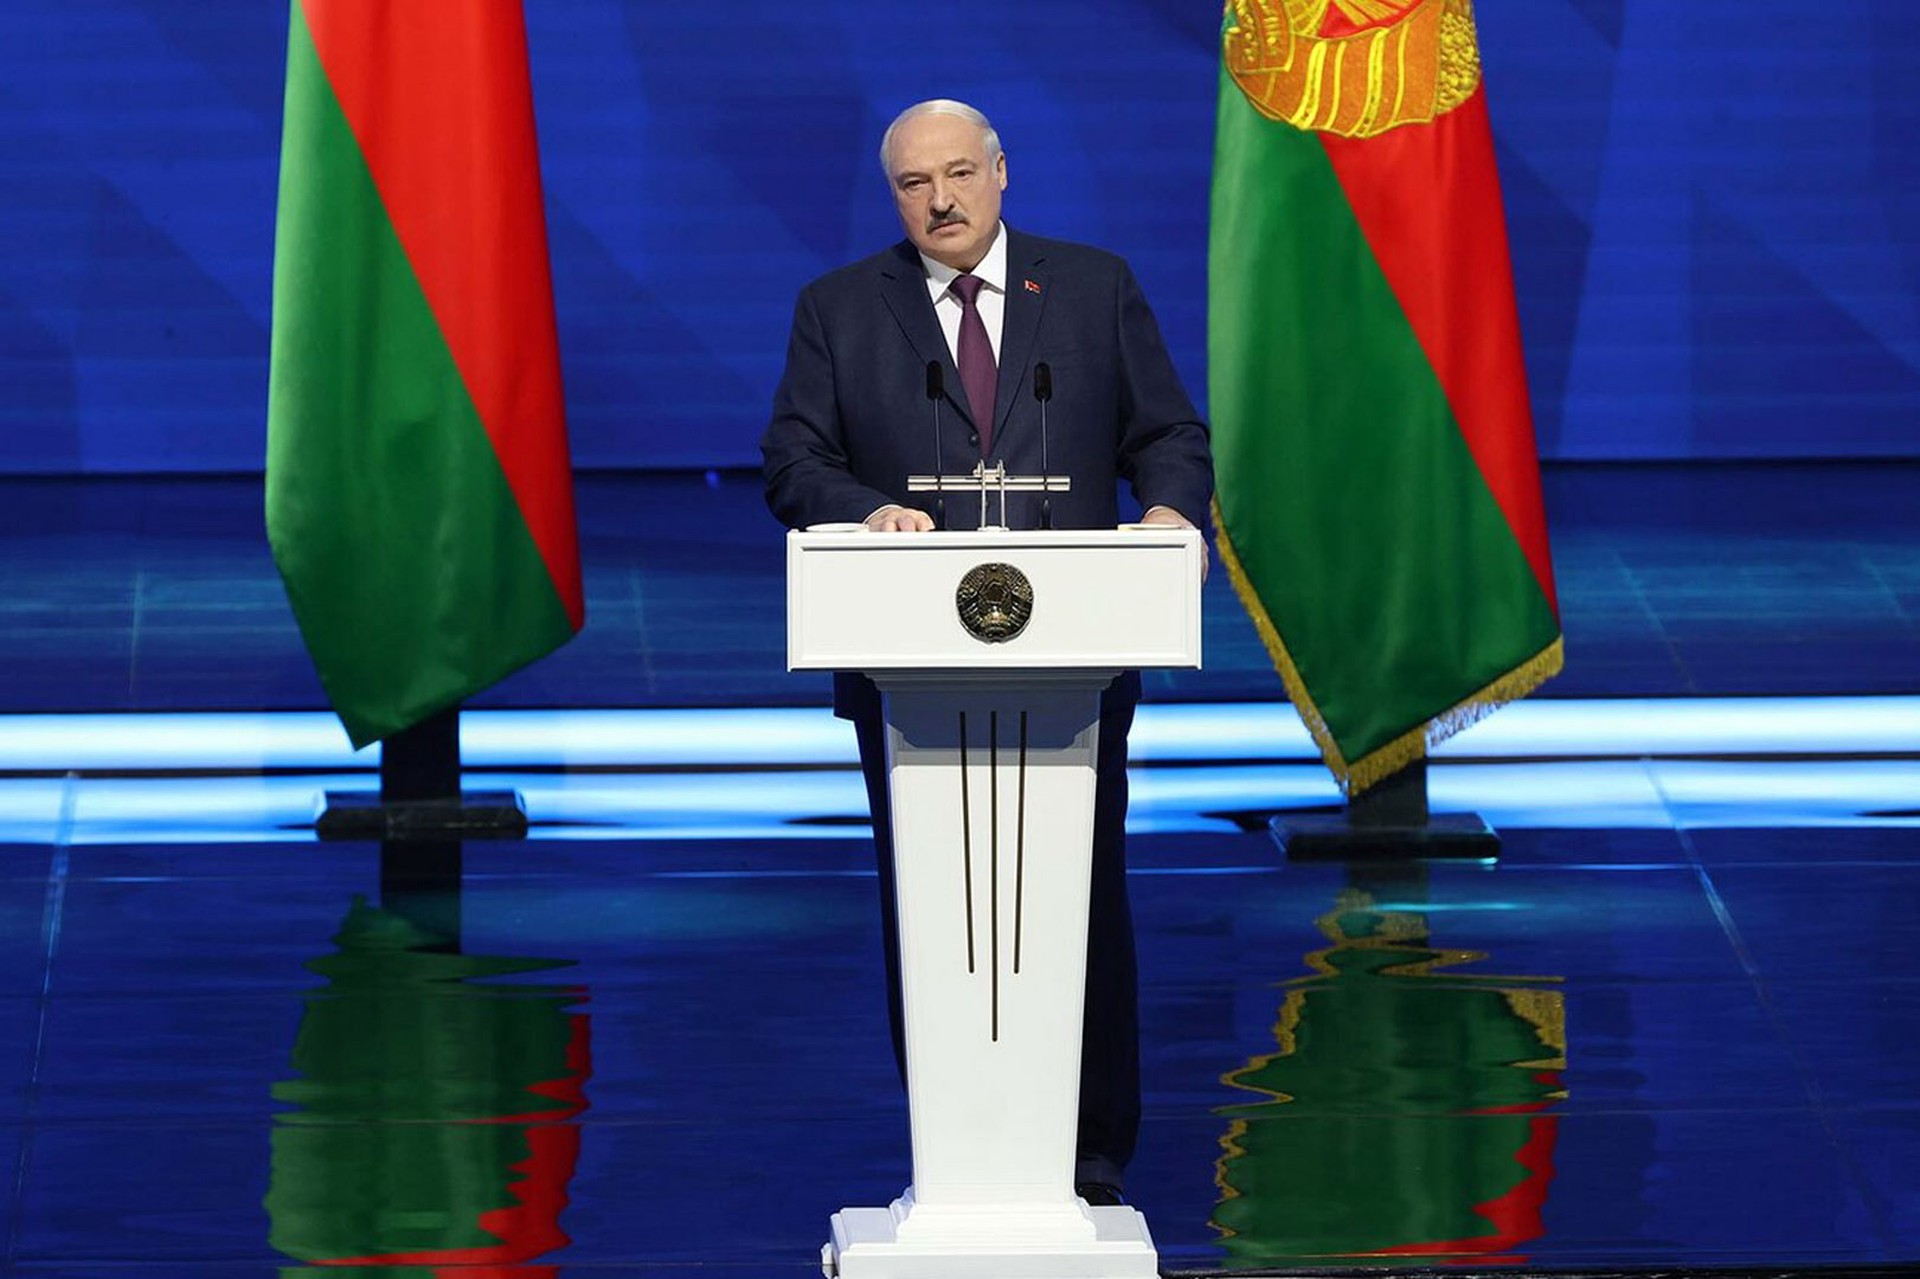 Лукашенко заявил, что Россия и Белоруссия могут гордиться успехами союзной интеграции